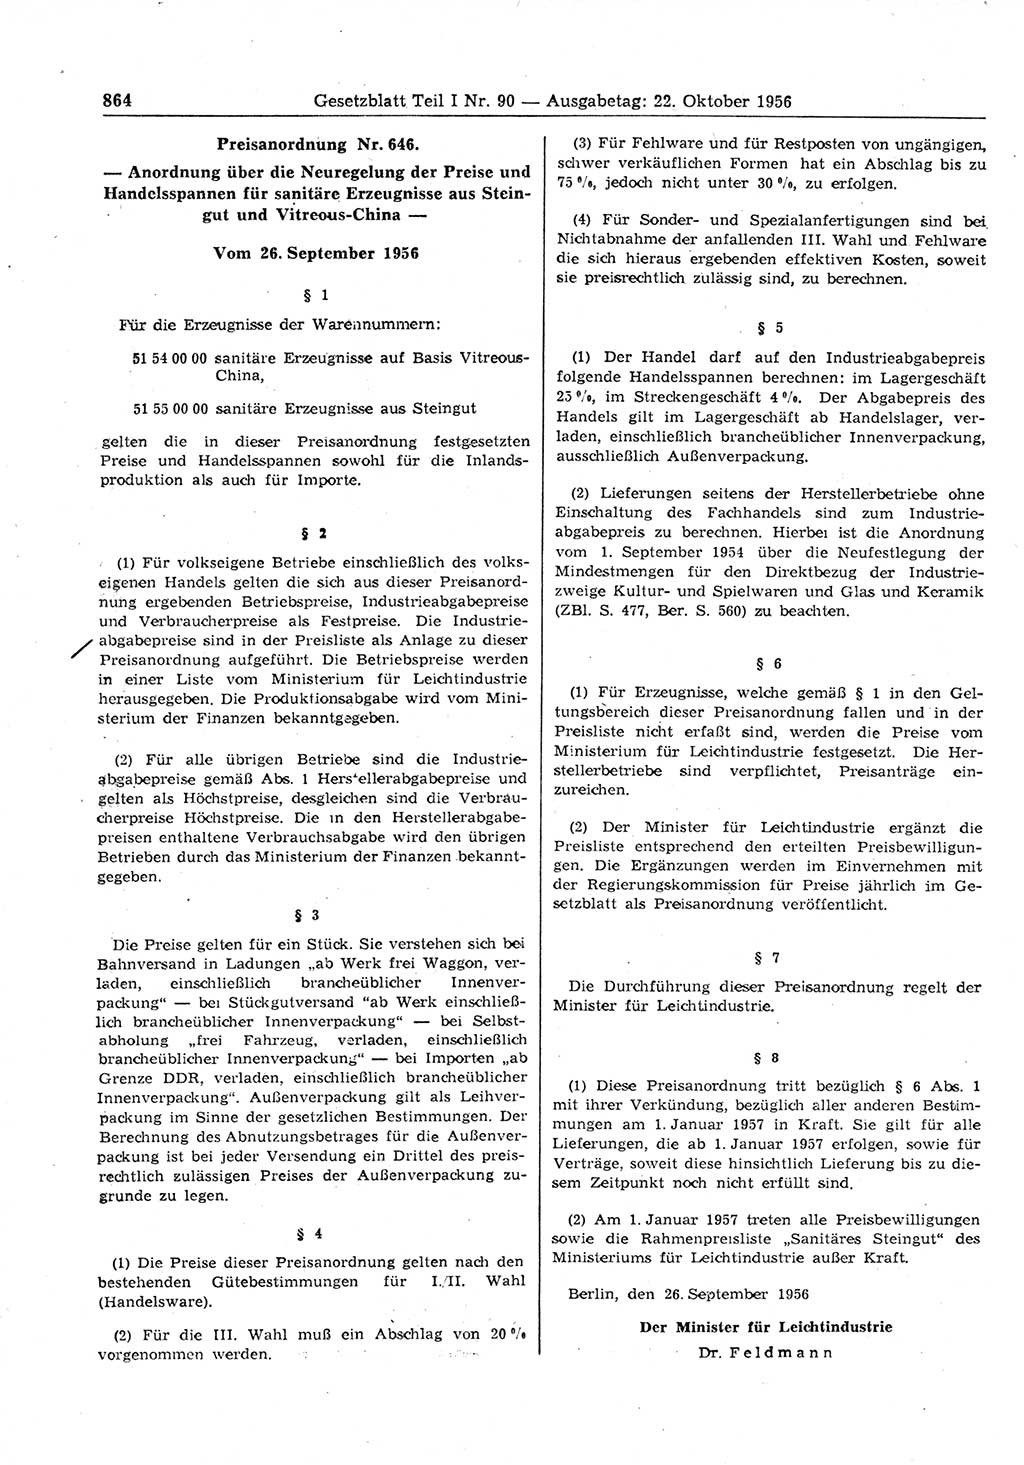 Gesetzblatt (GBl.) der Deutschen Demokratischen Republik (DDR) Teil Ⅰ 1956, Seite 864 (GBl. DDR Ⅰ 1956, S. 864)